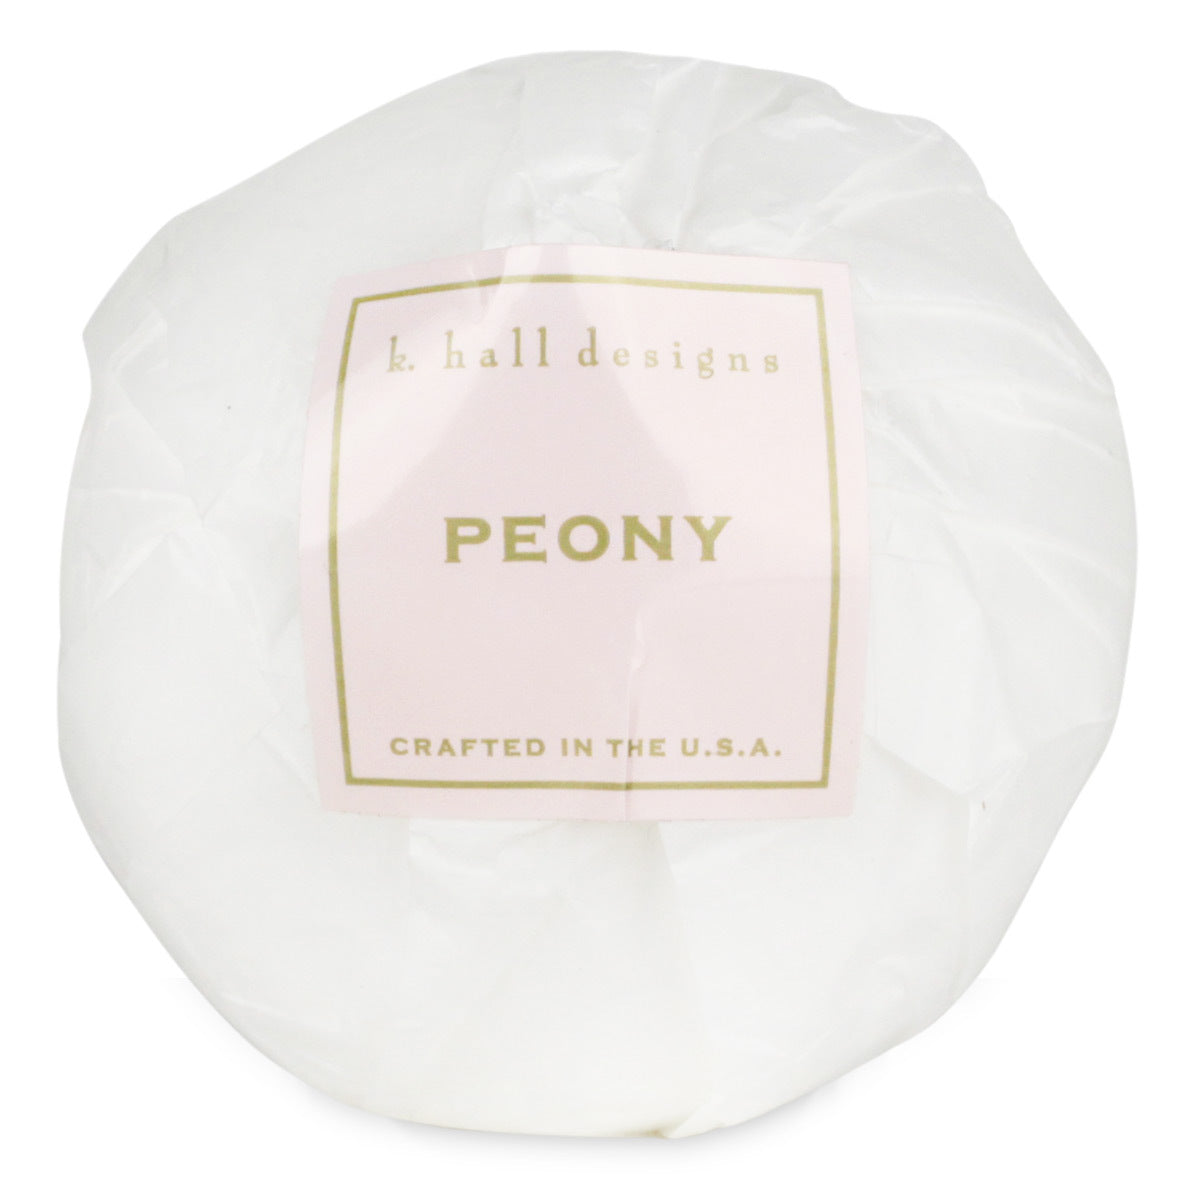 Primary image of Peony Bath Bomb